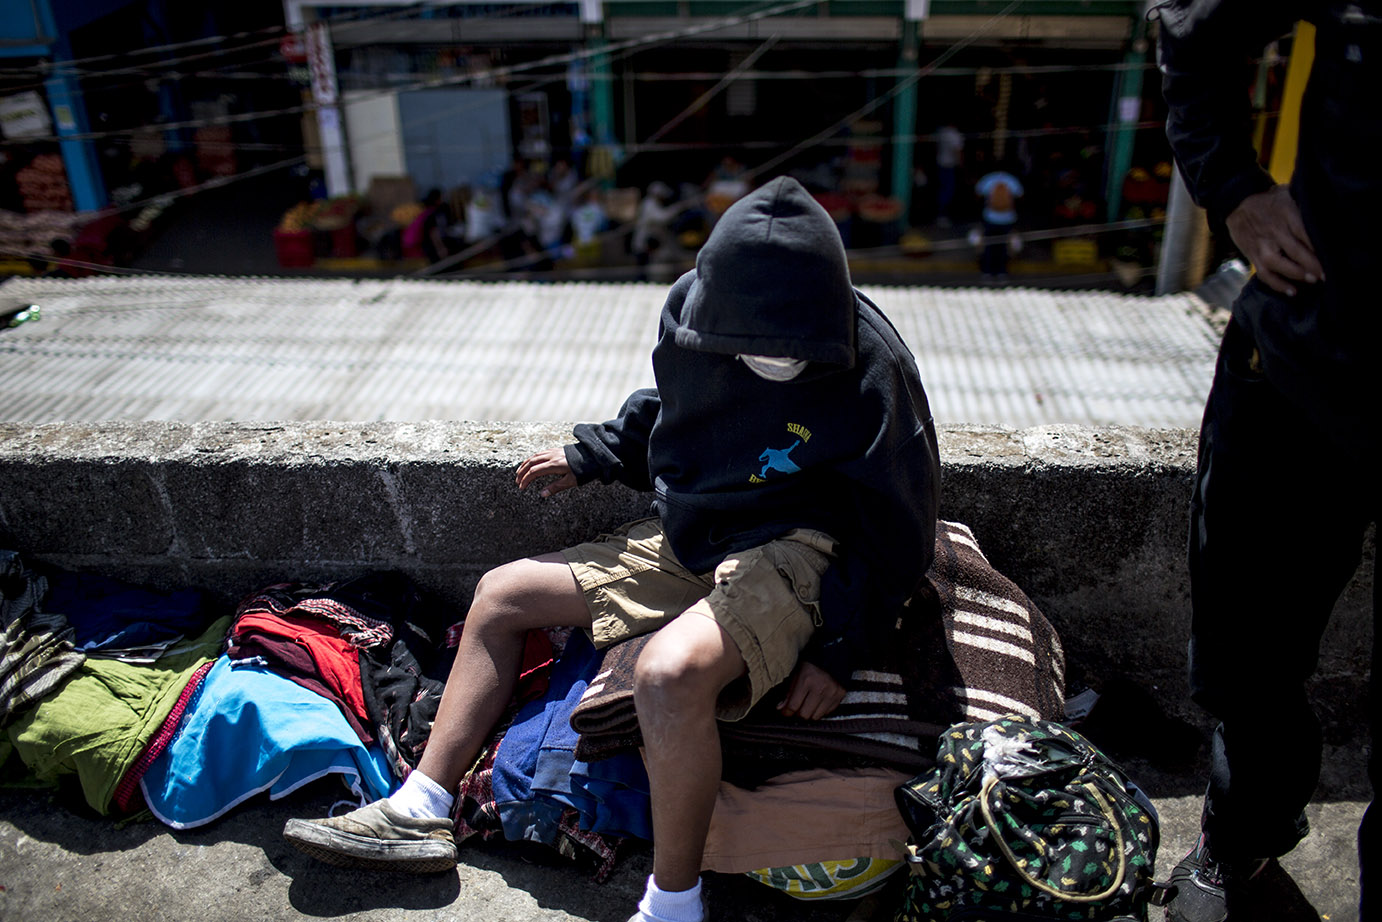 Ismael Mejillas, 15, es uno de los vagabundos que viven en la calle, entre el mercado de la Terminal y la avenida Atanasio Tzul. A pesar de todas las restricciones impuestas, él no tiene una casa dónde quedarse. Simone Dalmasso